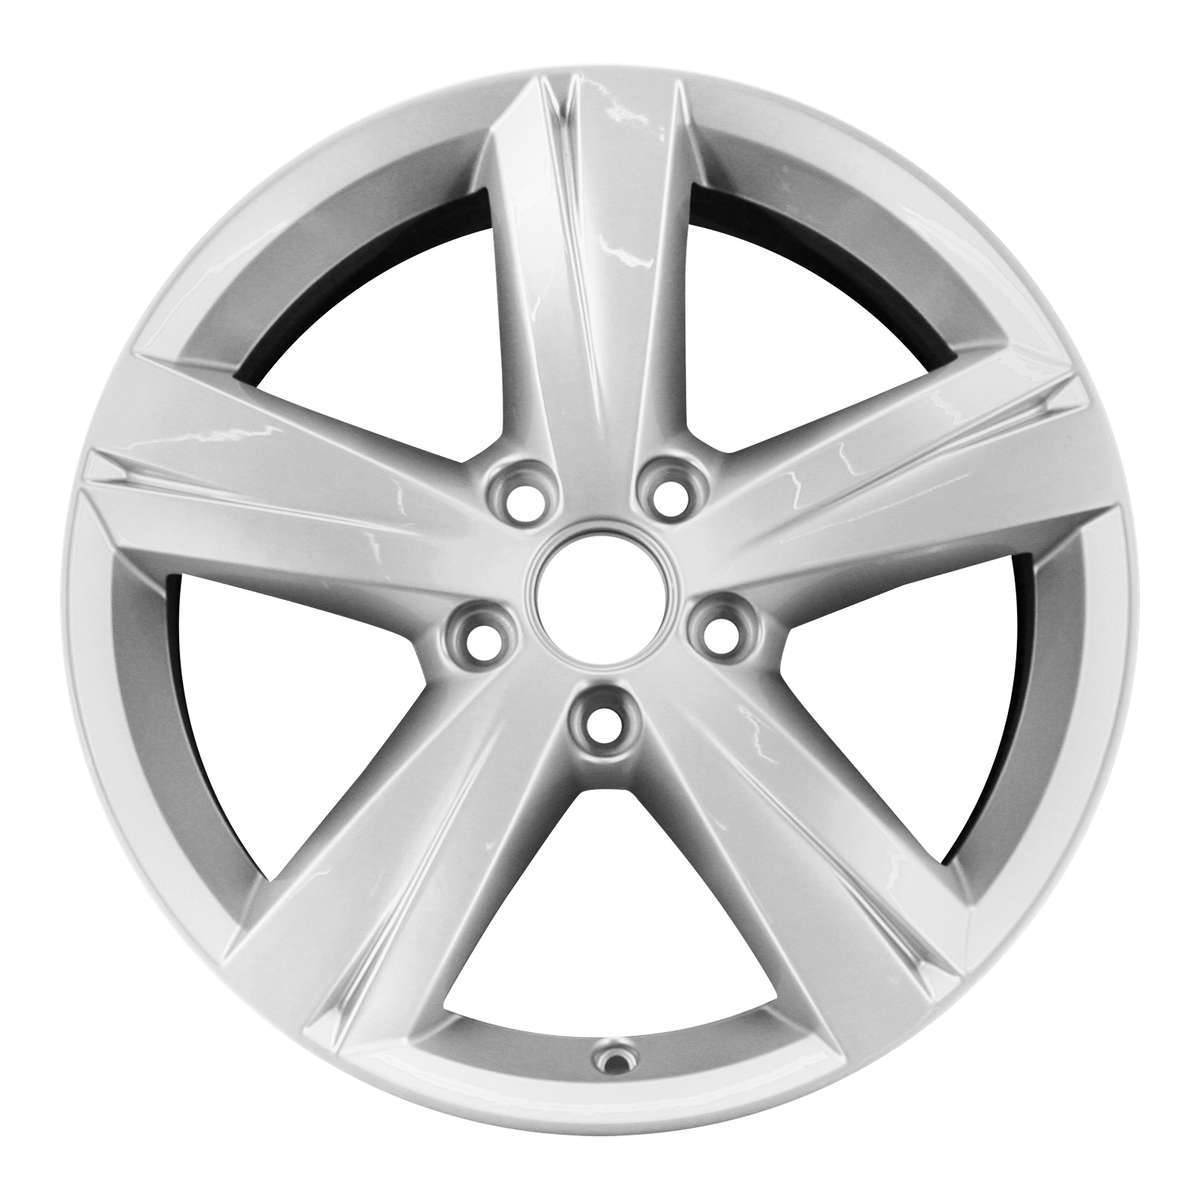 2013 Volkswagen Passat New 17" Replacement Wheel Rim RW69928S